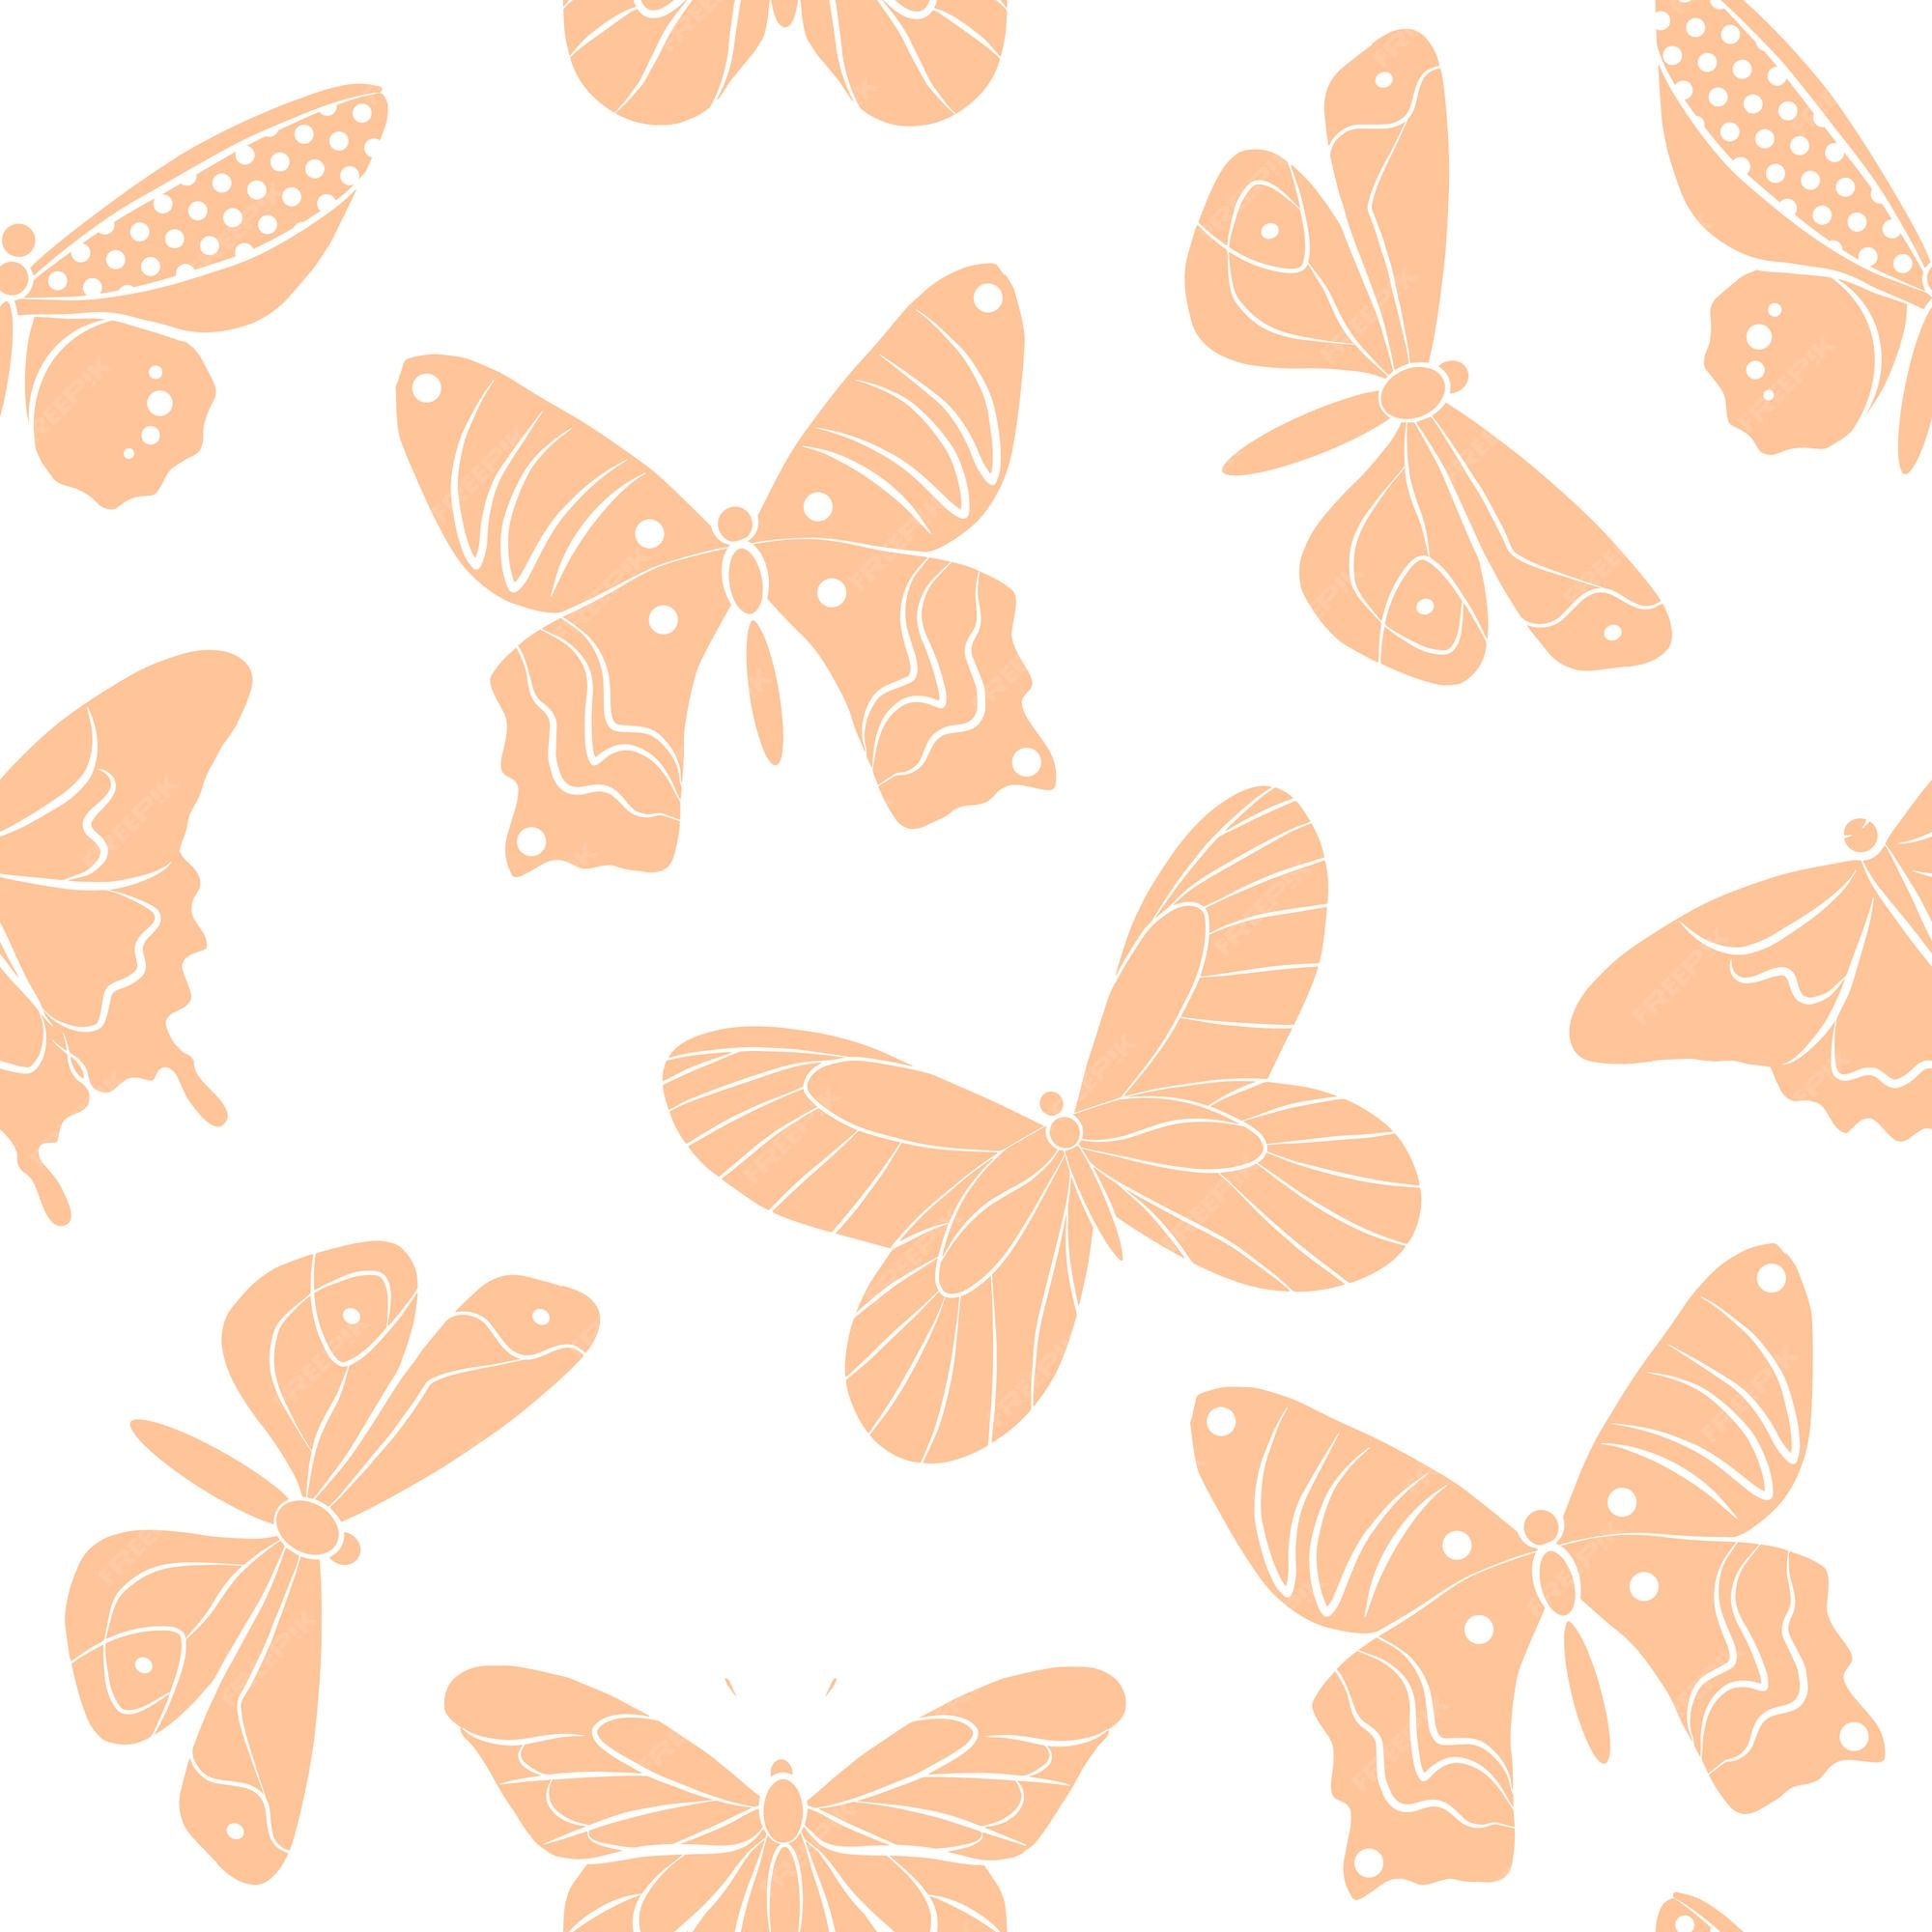 Thông tin động vật bướm cánh cứng độc đáo chắc chắn sẽ làm bạn say mê với các chi tiết về loài bướm này. Với những nét đan xen tinh tế và màu sắc phong phú, hình ảnh này chắc chắn sẽ khiến bạn muốn khám phá thêm về thế giới động vật.